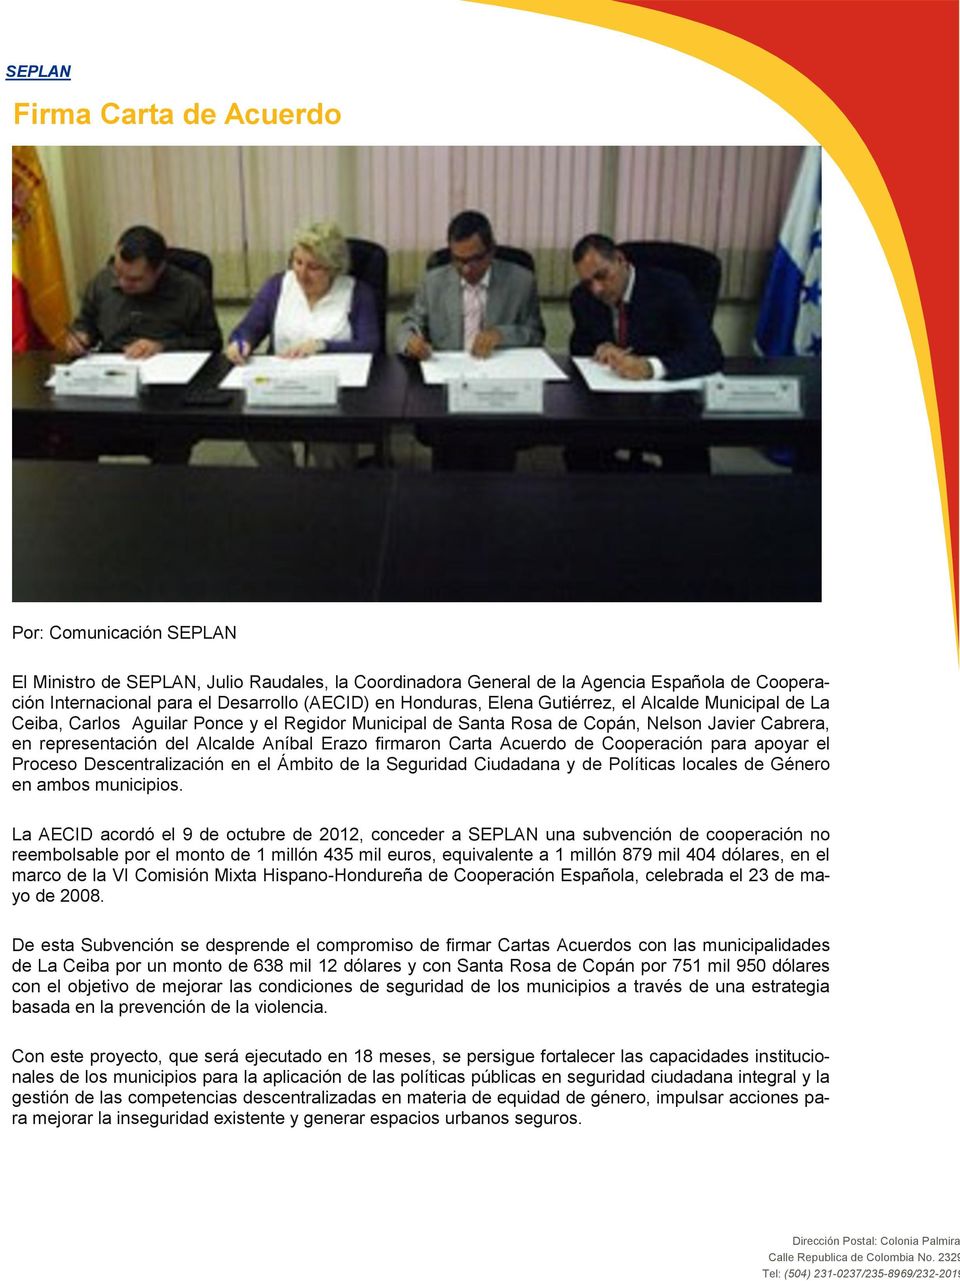 firmaron Carta Acuerdo de Cooperación para apoyar el Proceso Descentralización en el Ámbito de la Seguridad Ciudadana y de Políticas locales de Género en ambos municipios.